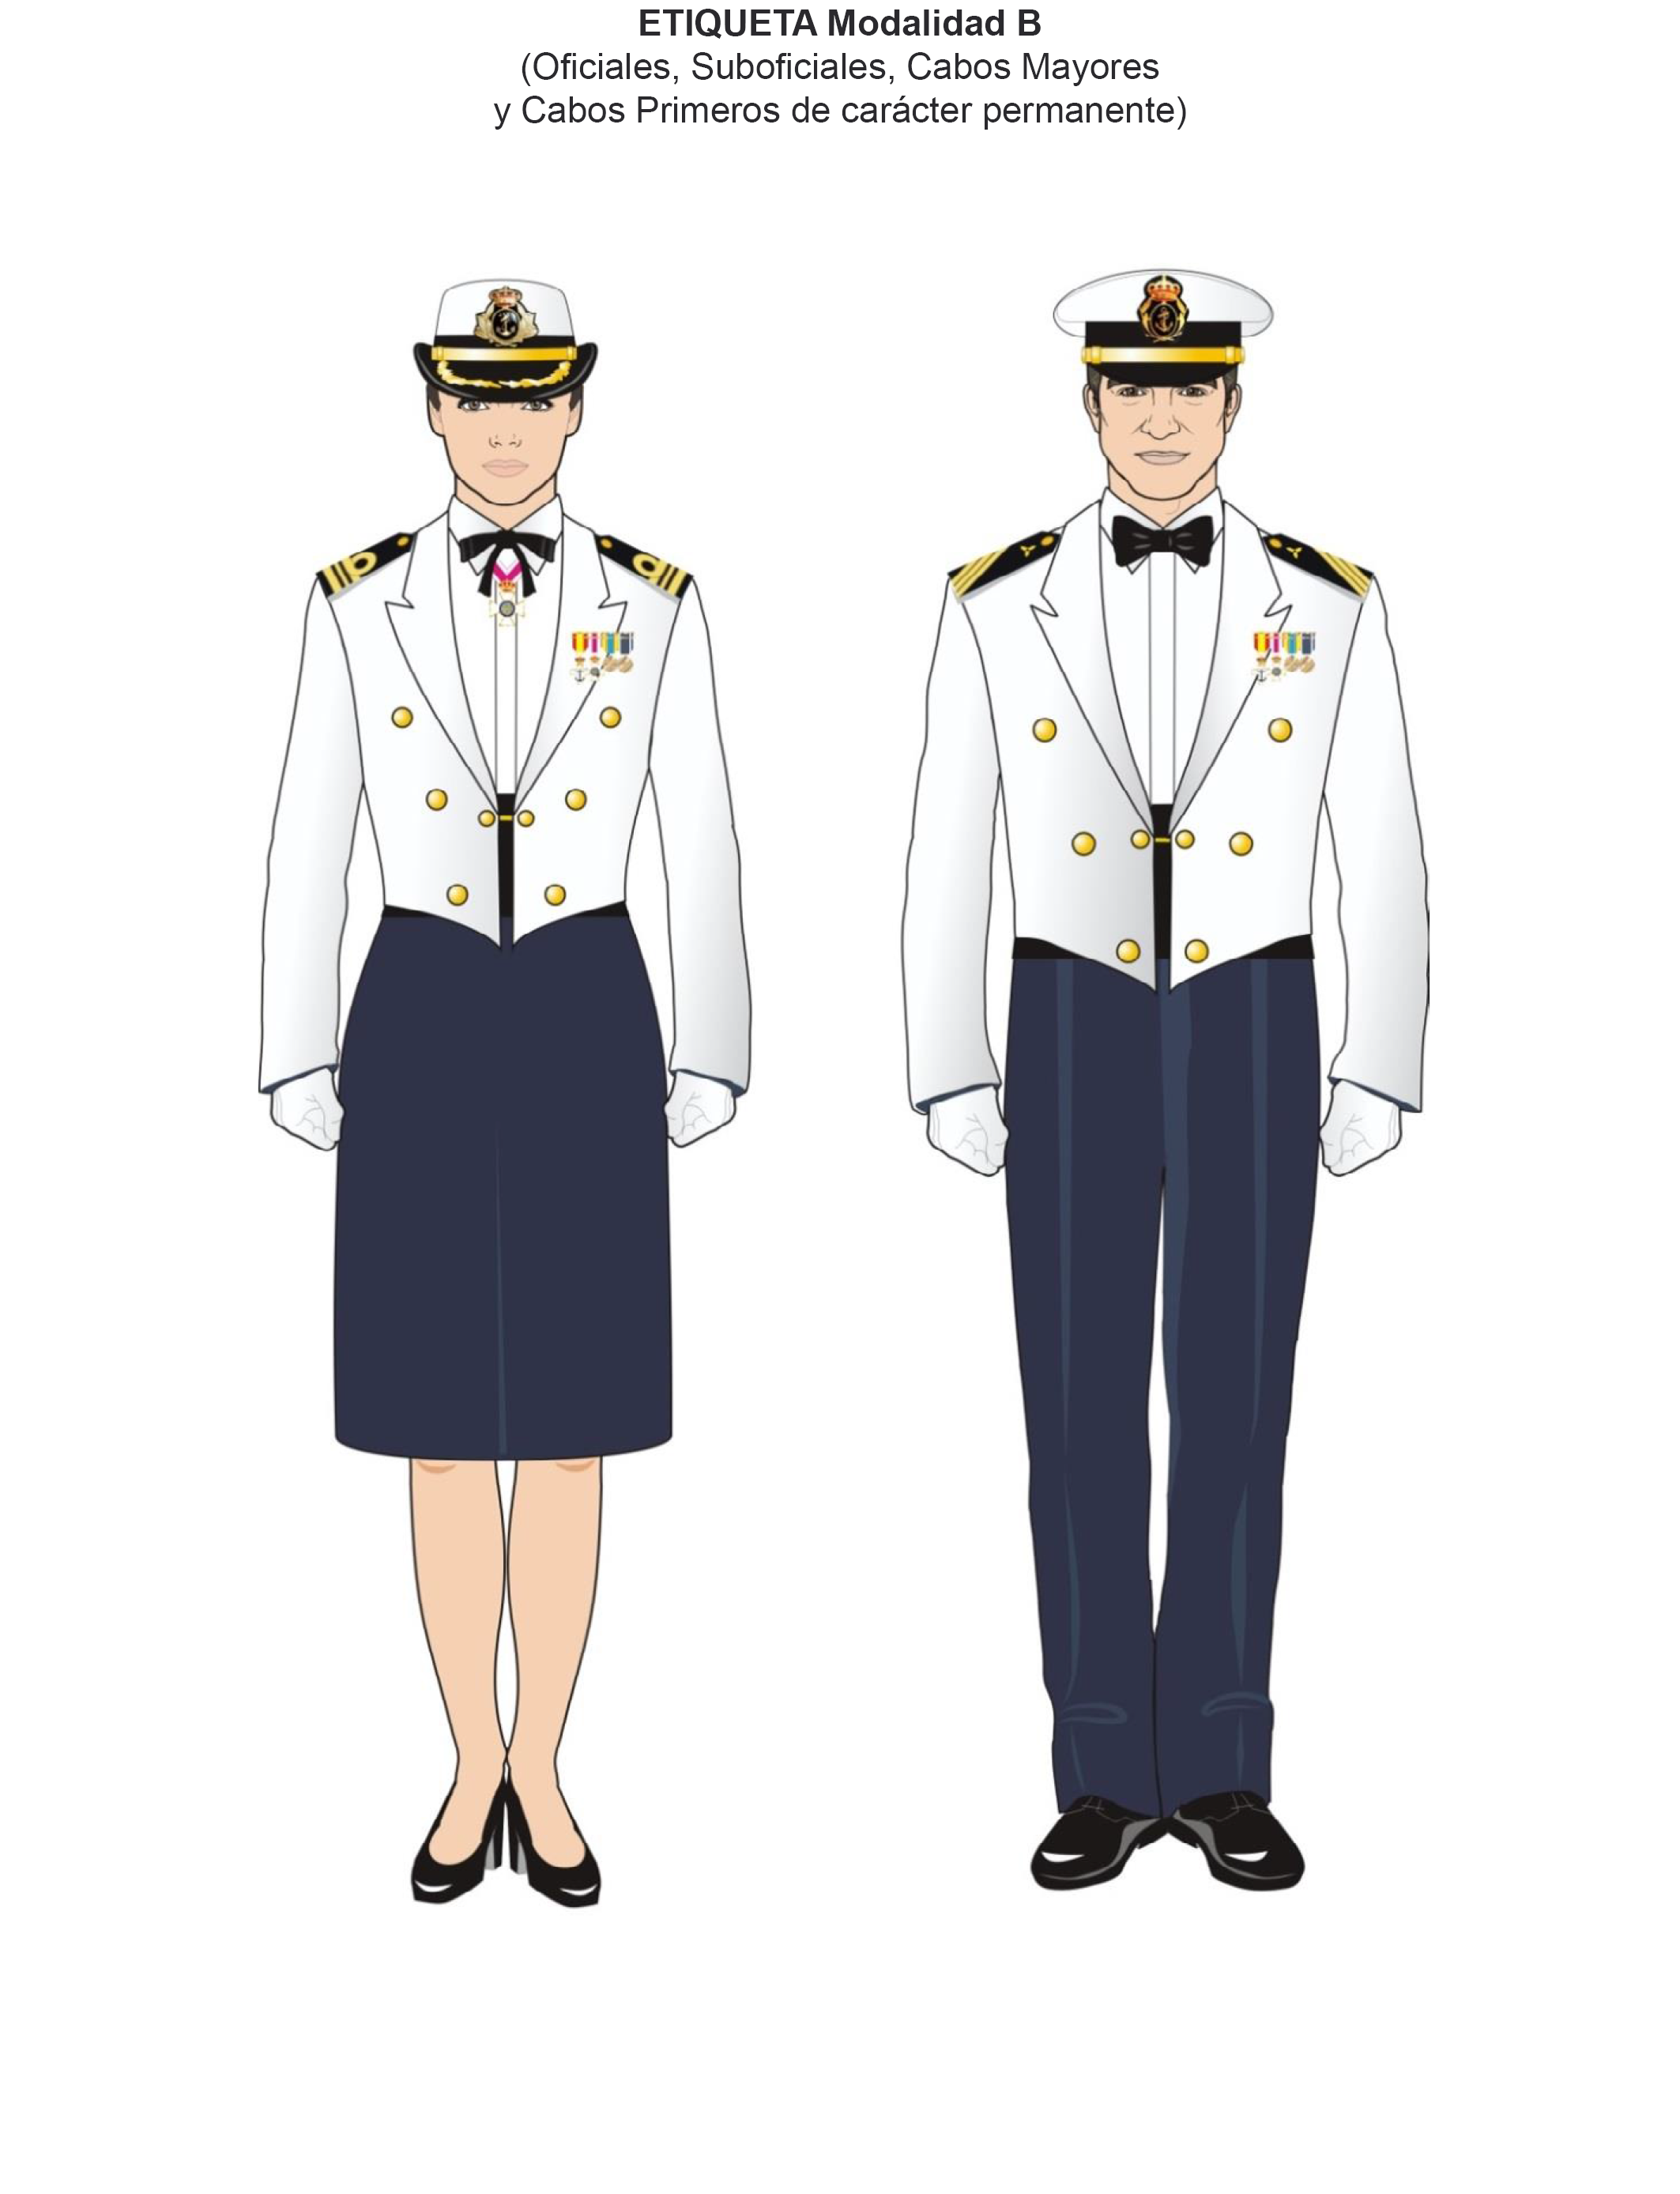 BOE-A-2016-10303 Orden DEF/1756/2016, de 28 de octubre, por la que se  aprueban las normas de uniformidad de las Fuerzas Armadas.